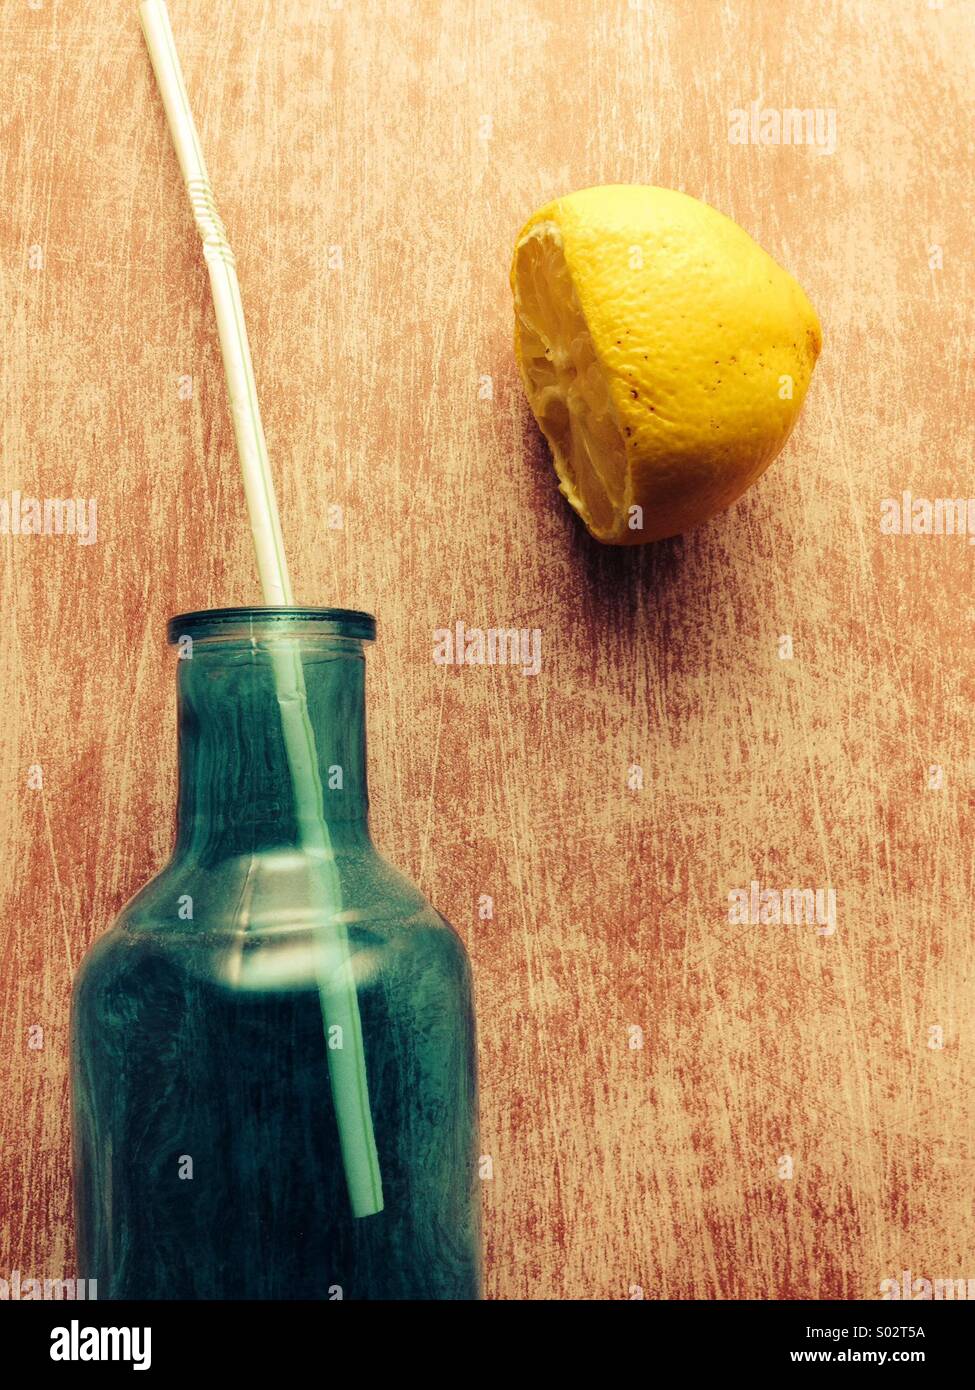 Le flacon en verre avec de la paille et de citron séché Banque D'Images